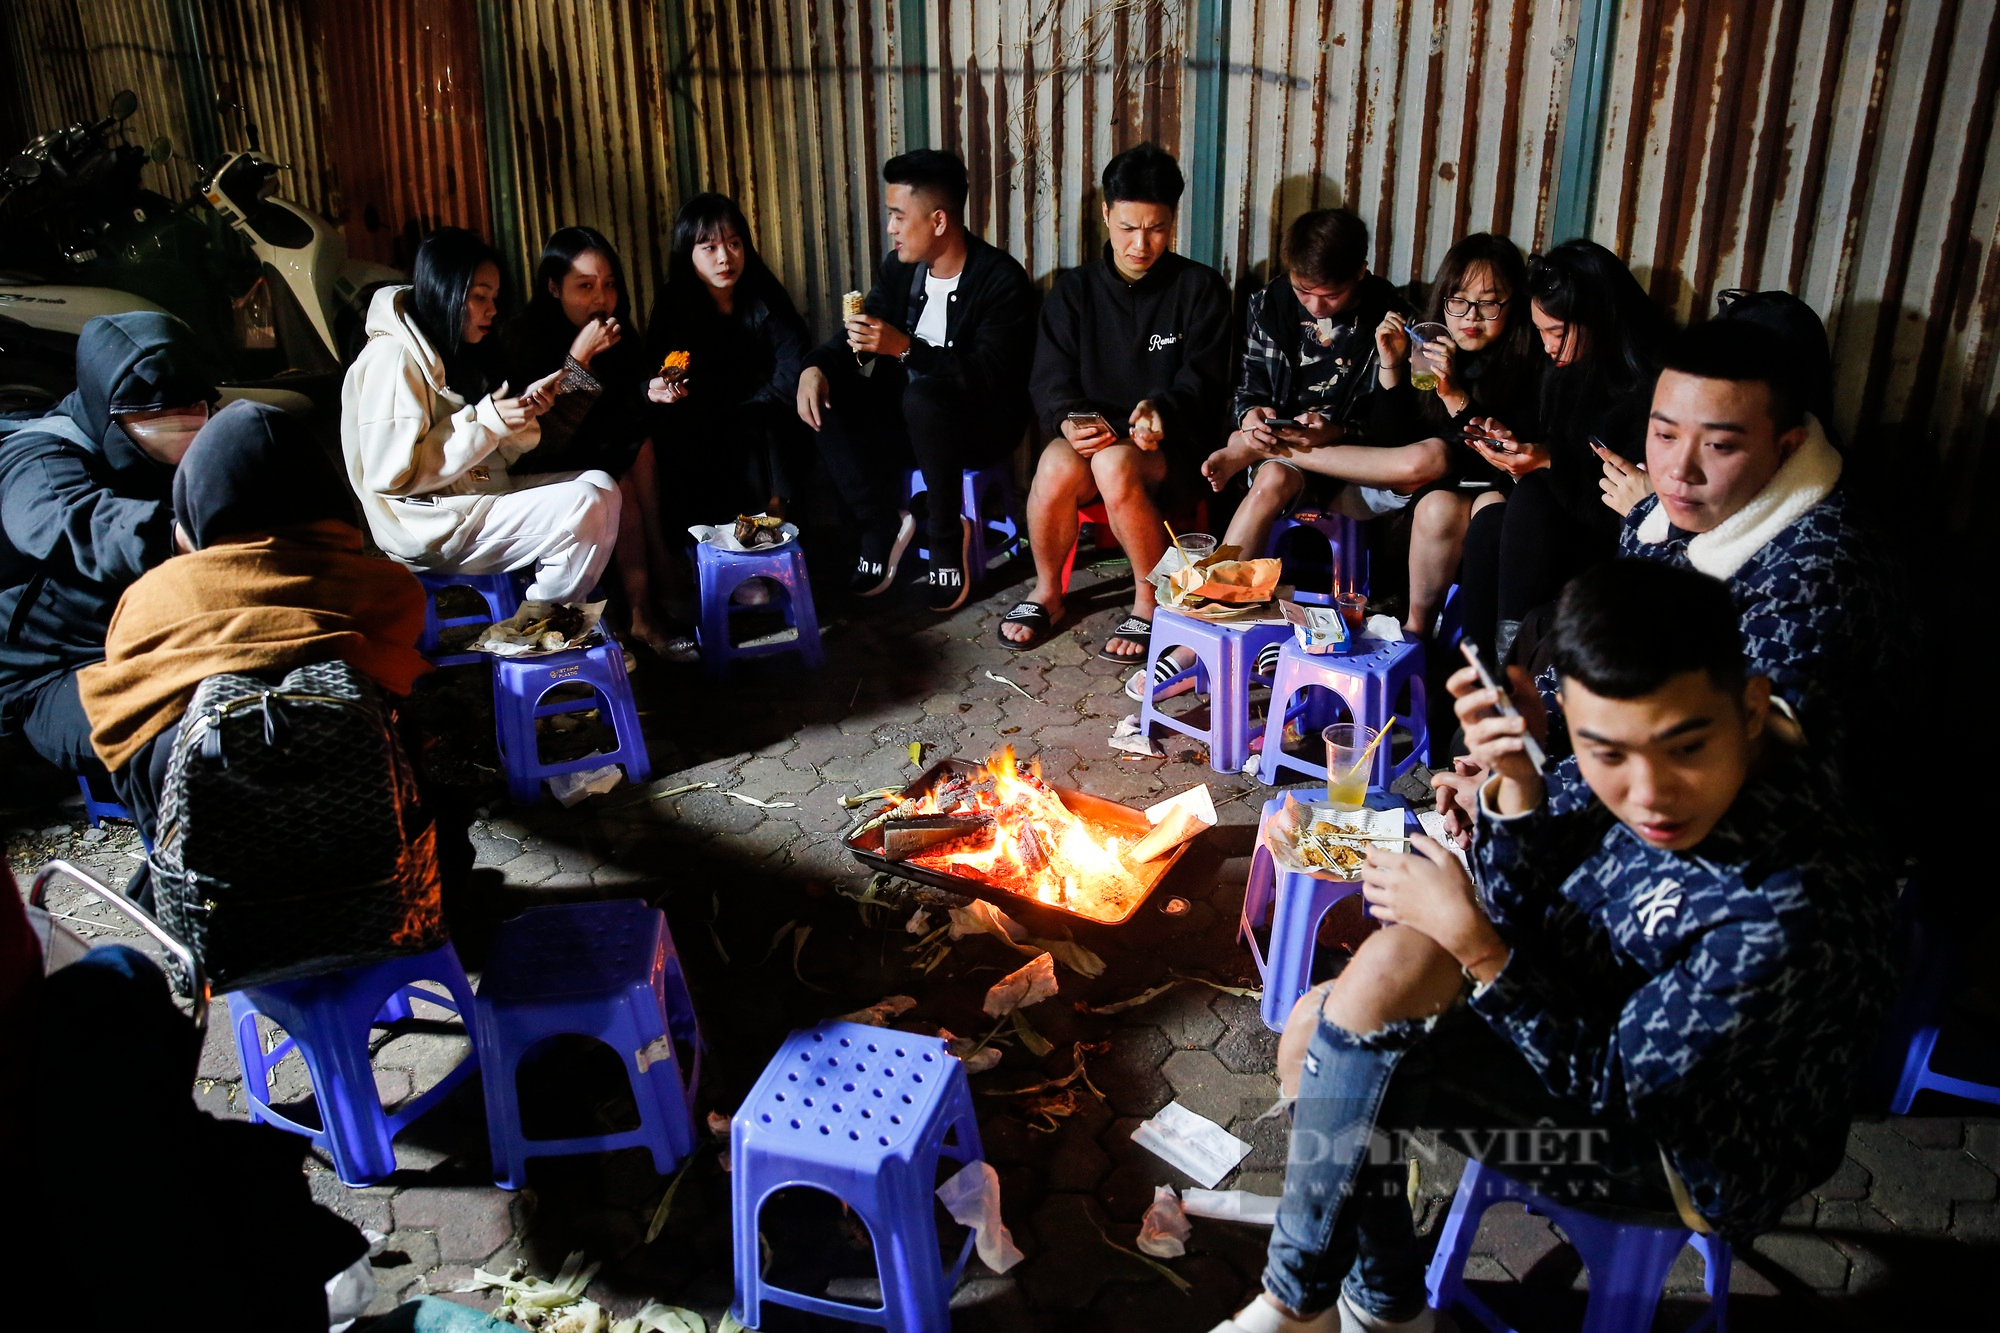 Giới trẻ Hà Nội đổ xô ra hồ Tây sưởi ấm, ăn ngô nướng giữa đêm đông lạnh giá - Ảnh 10.